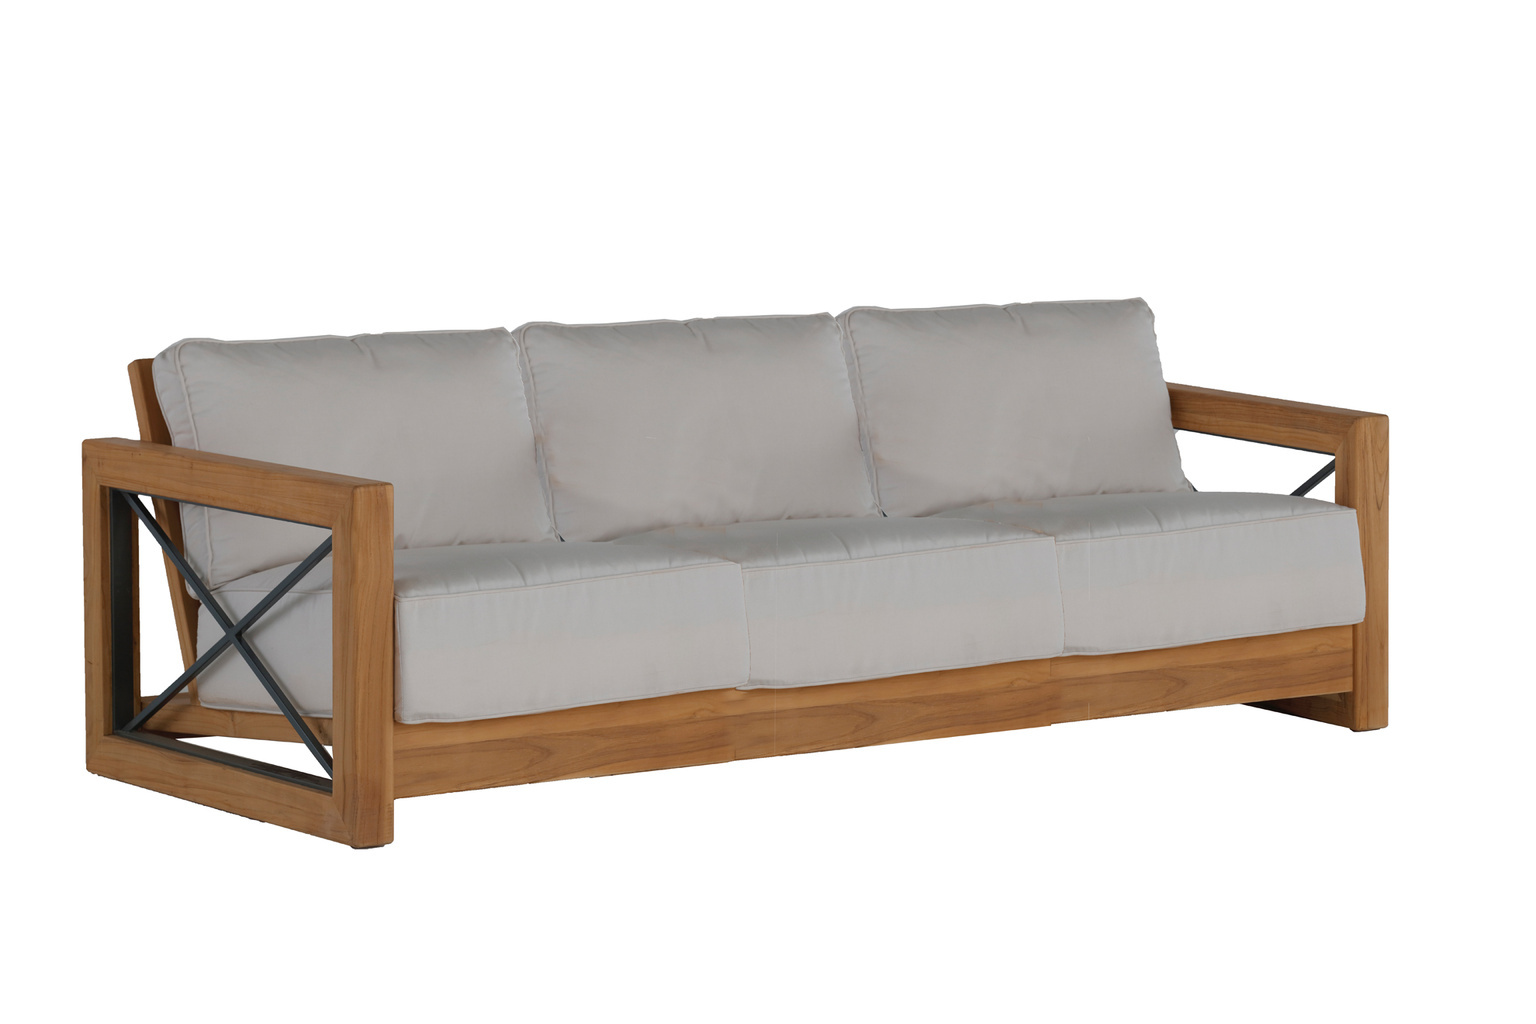 malta teak sofa in natural teak product image